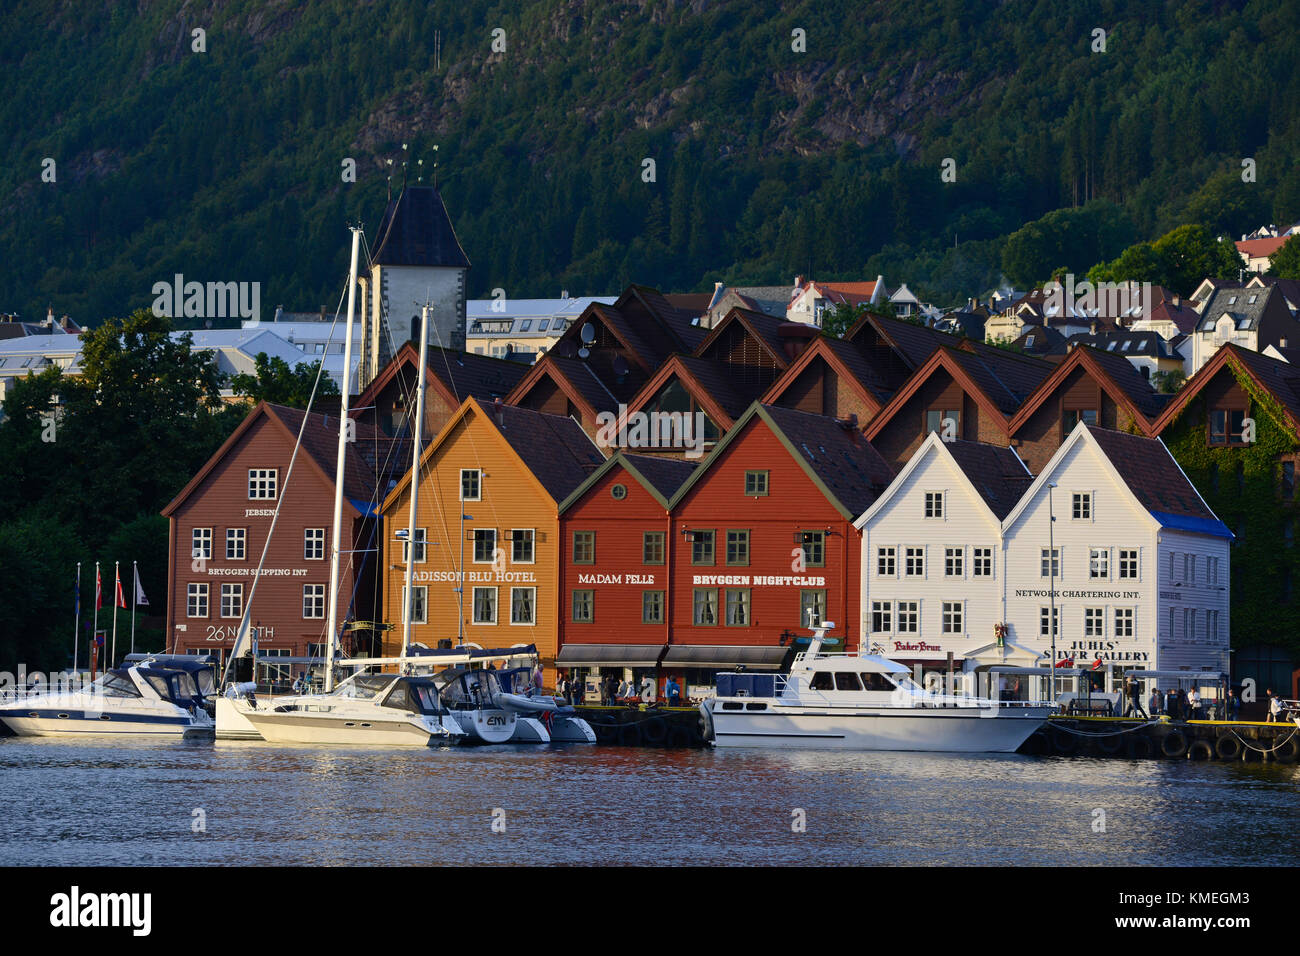 Bryggen street and harbor, Bergen, Norway Stock Photo